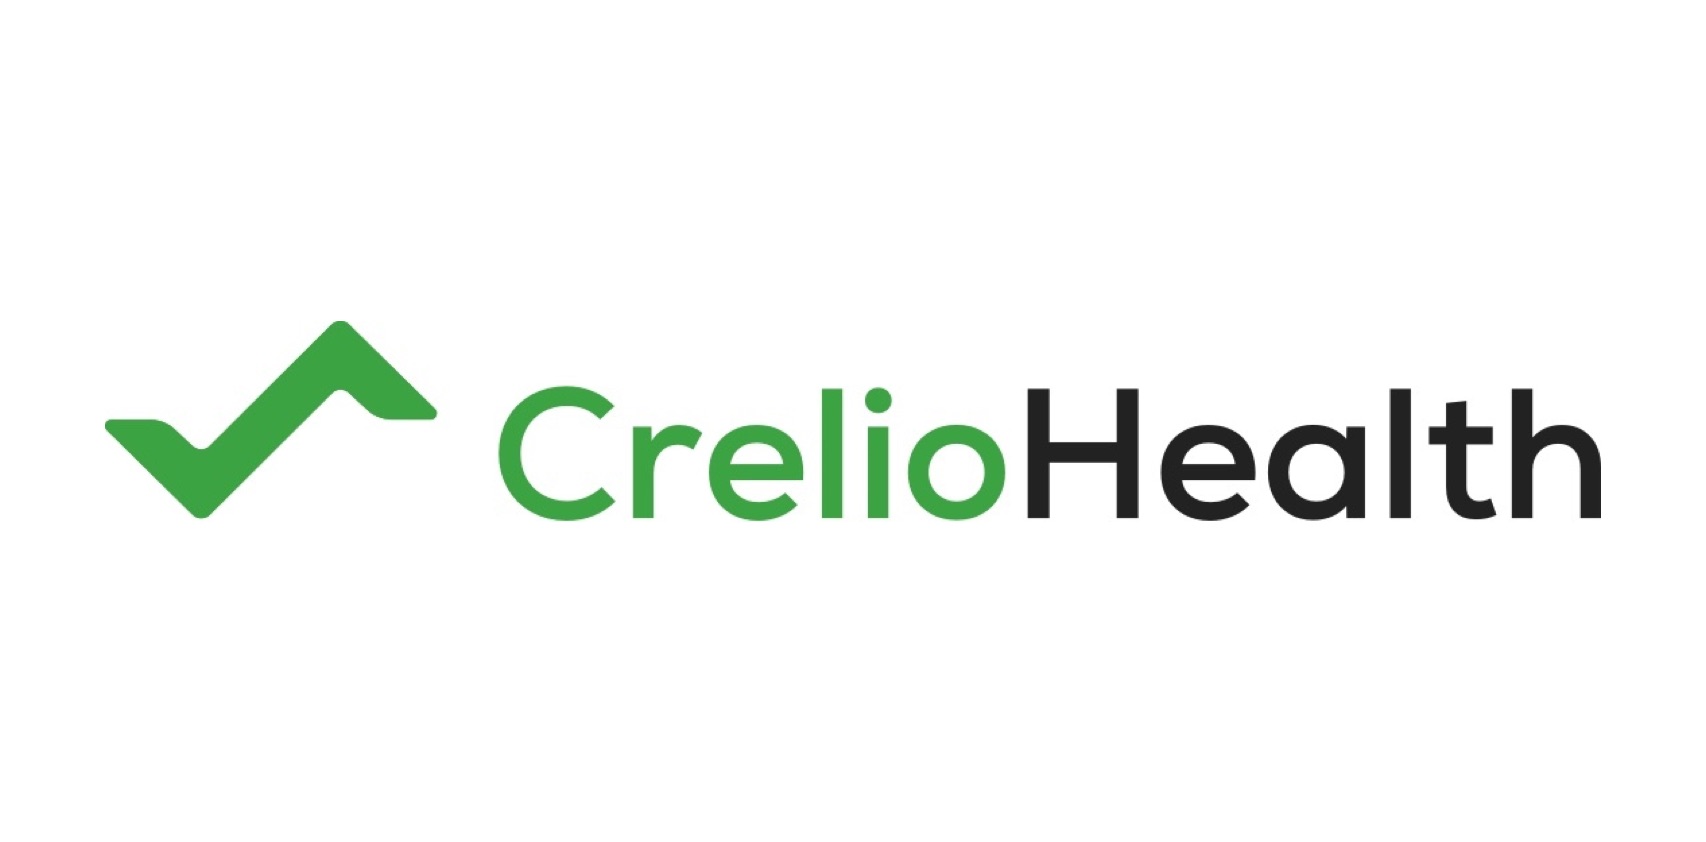 Creliohealth